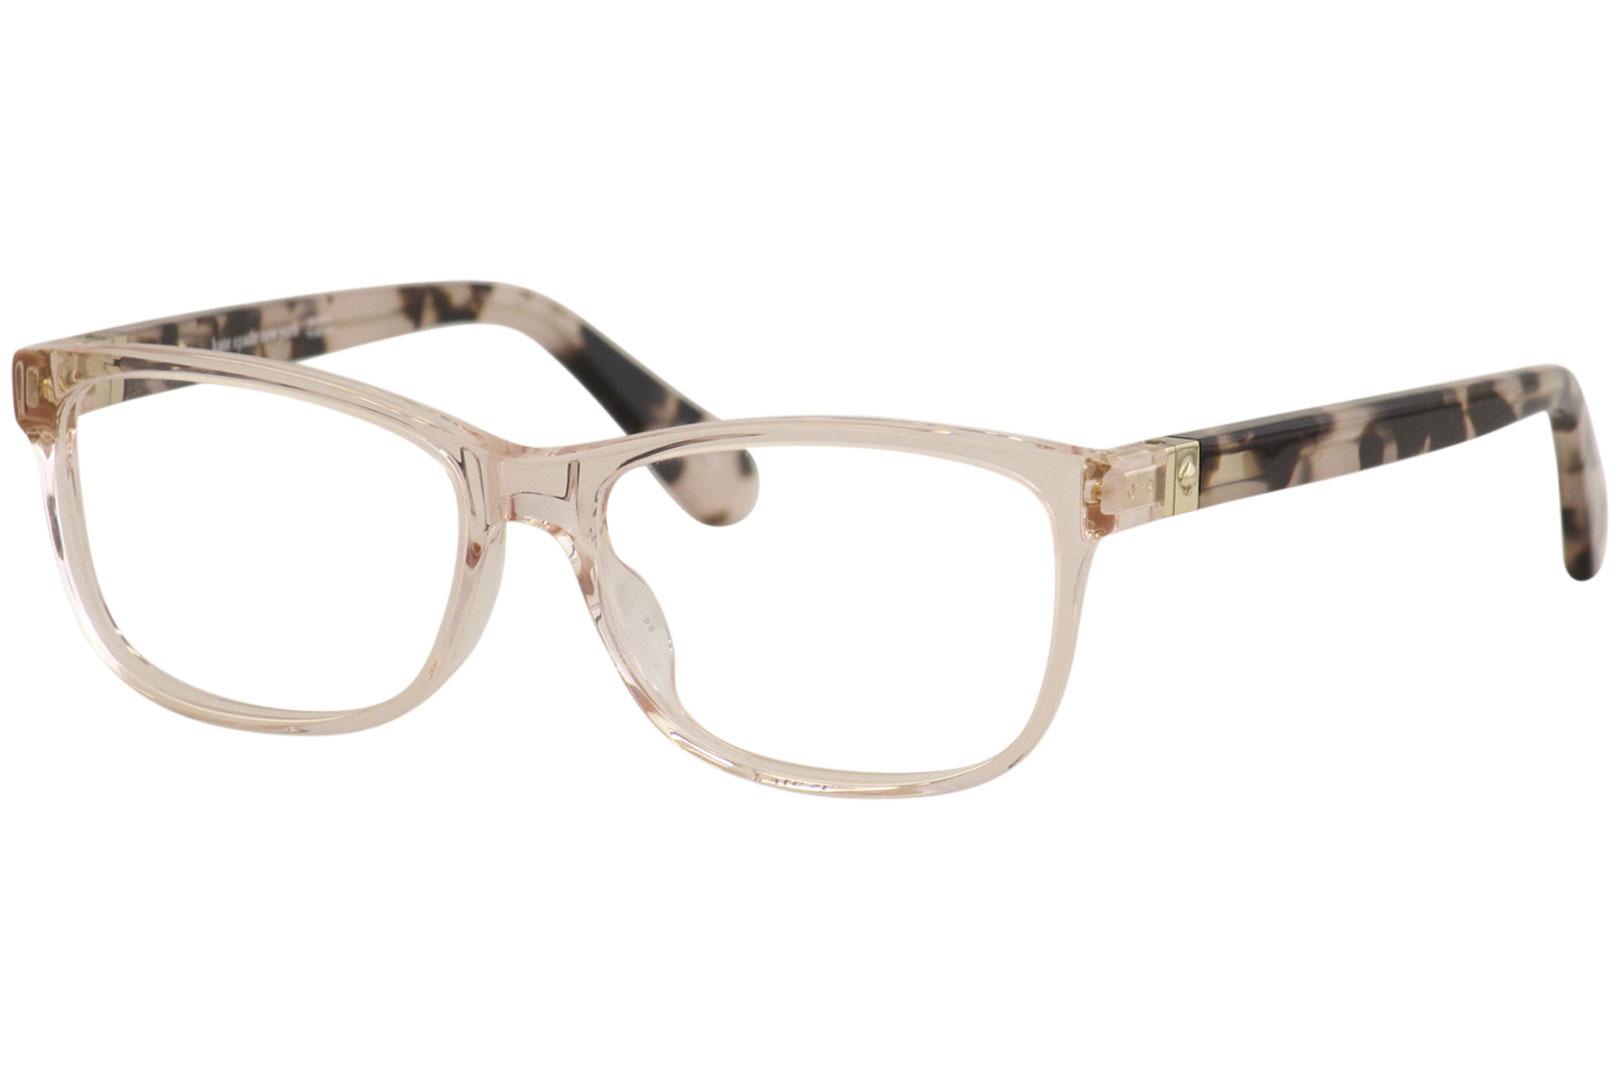 Kate Spade Women's Eyeglasses Calley HT8 Pink/Havana Full Rim Optical Frame  52mm 